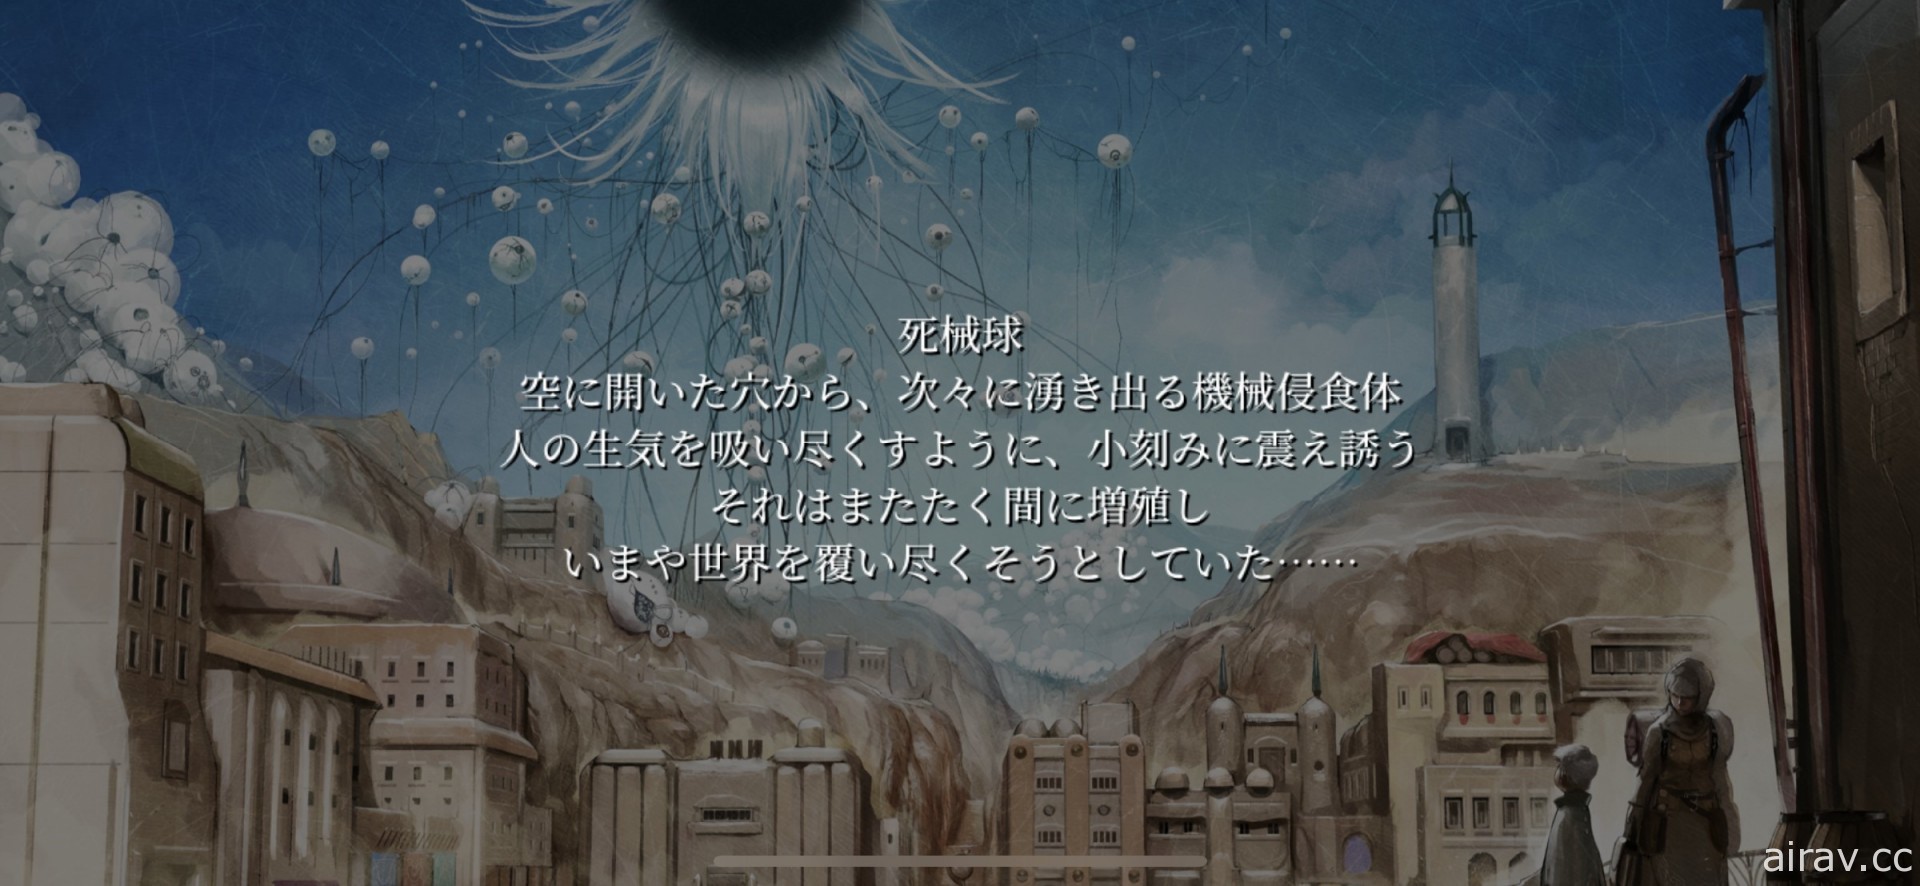 【试玩】坂口博信 x 植松伸夫最新力作《FANTASIAN》 延续《Final Fantasy》经典风格